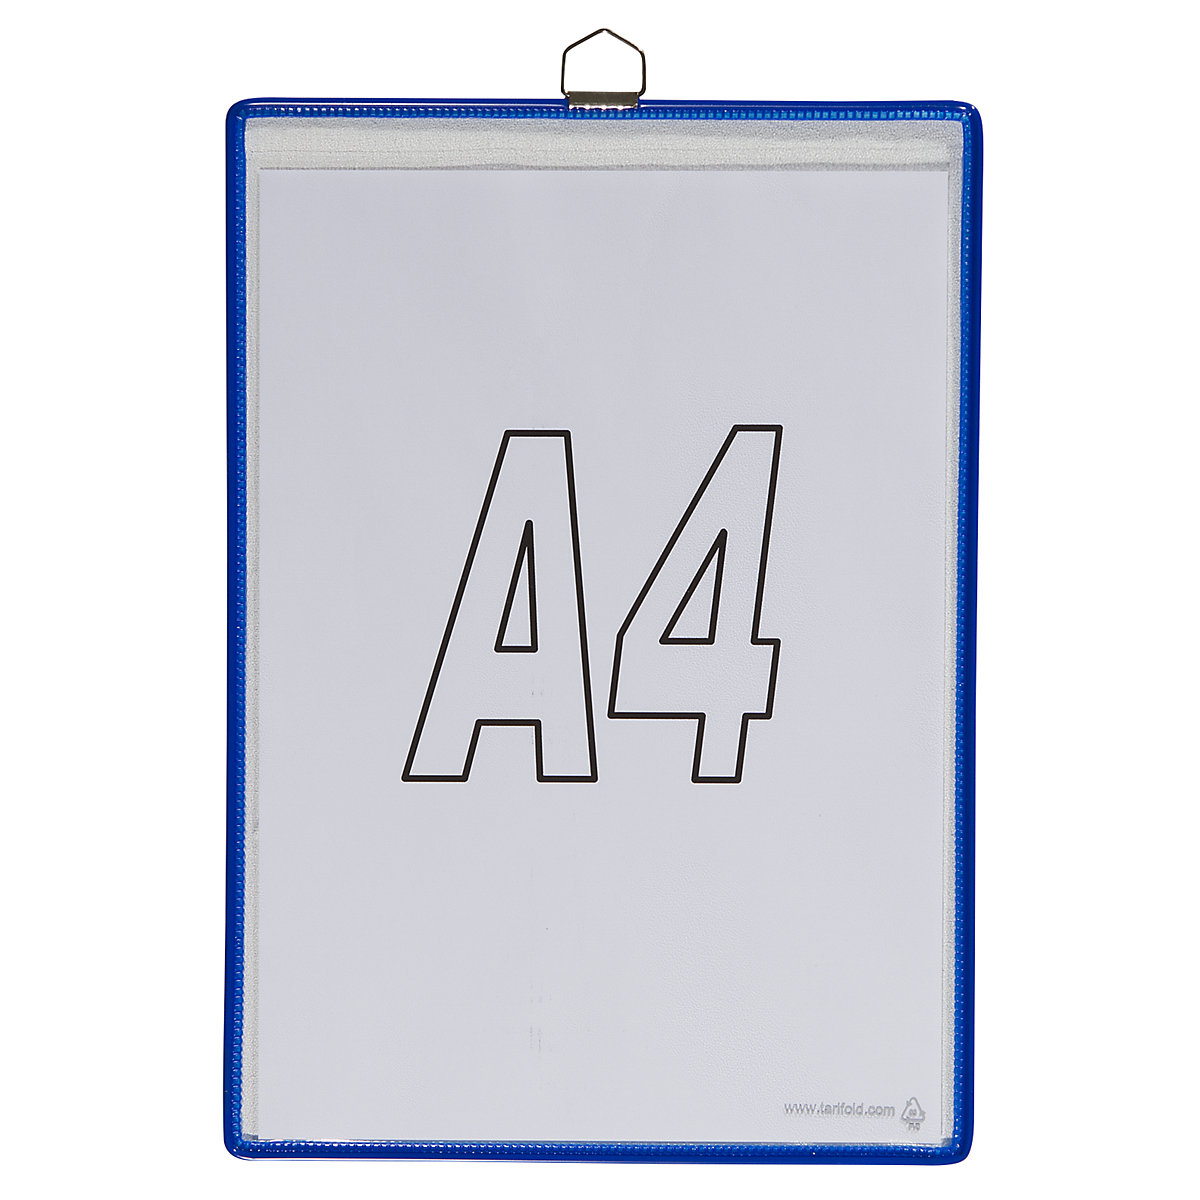 Pochette transparente à accrocher – Tarifold, pour format A4, coloris bleu, lot de 10-4